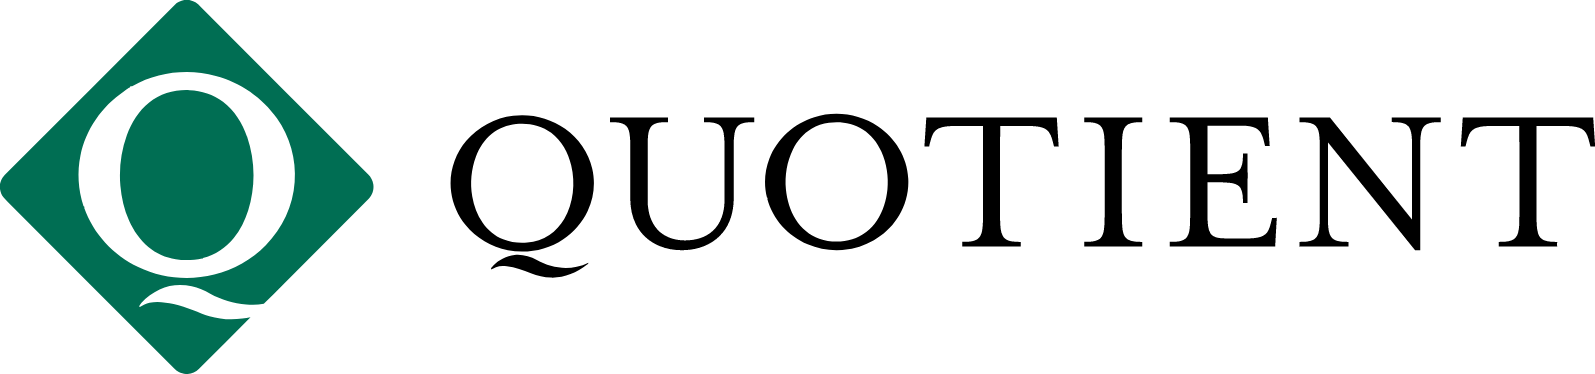 Quotient logo large (transparent PNG)